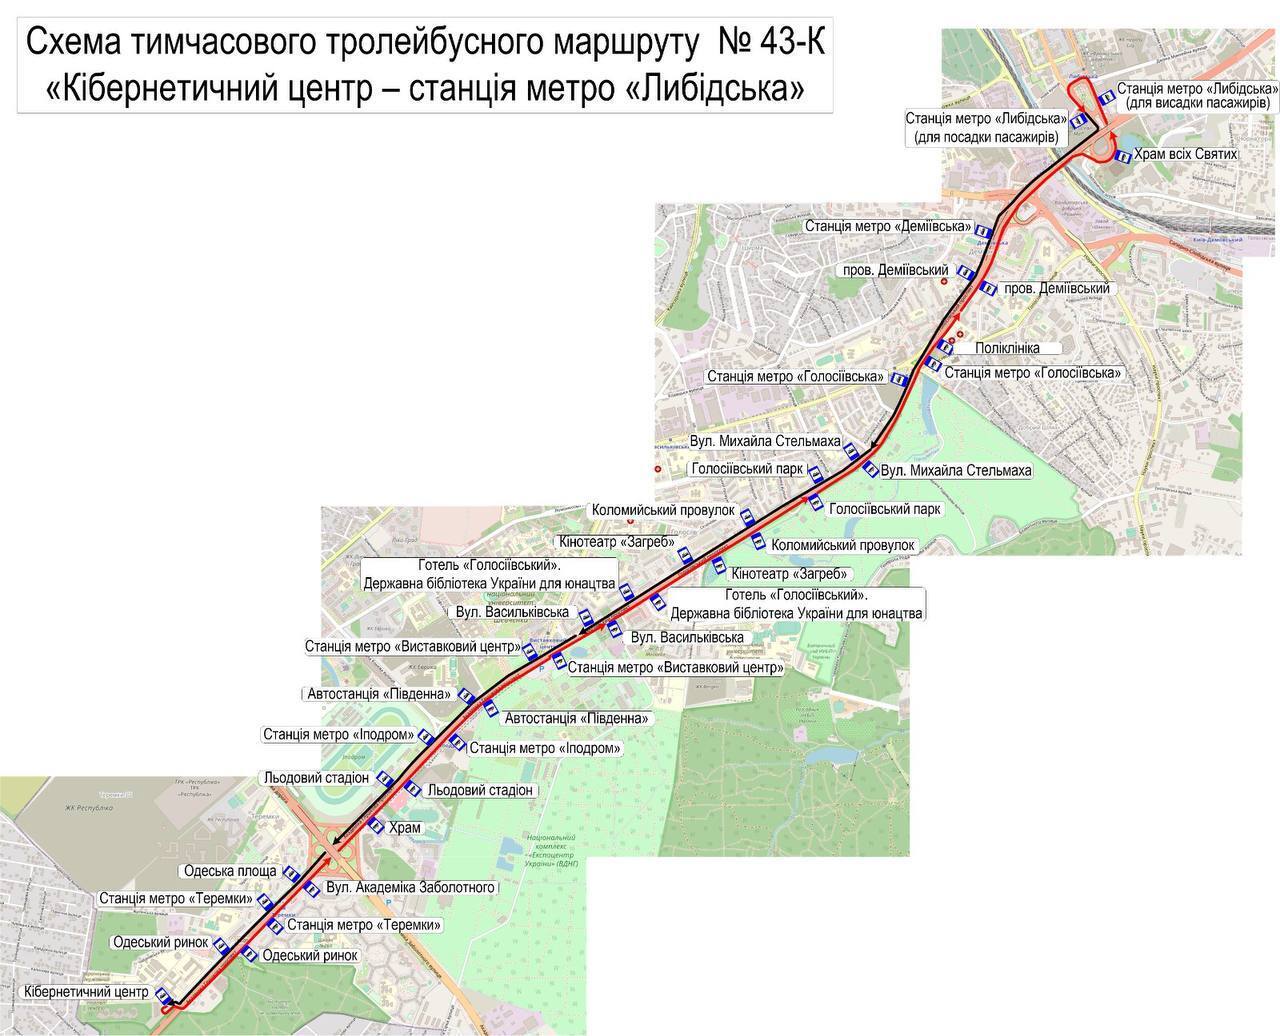 Закрытие части синей ветки метро Киева: для общественного транспорта разработают отдельную полосу движения. Карта